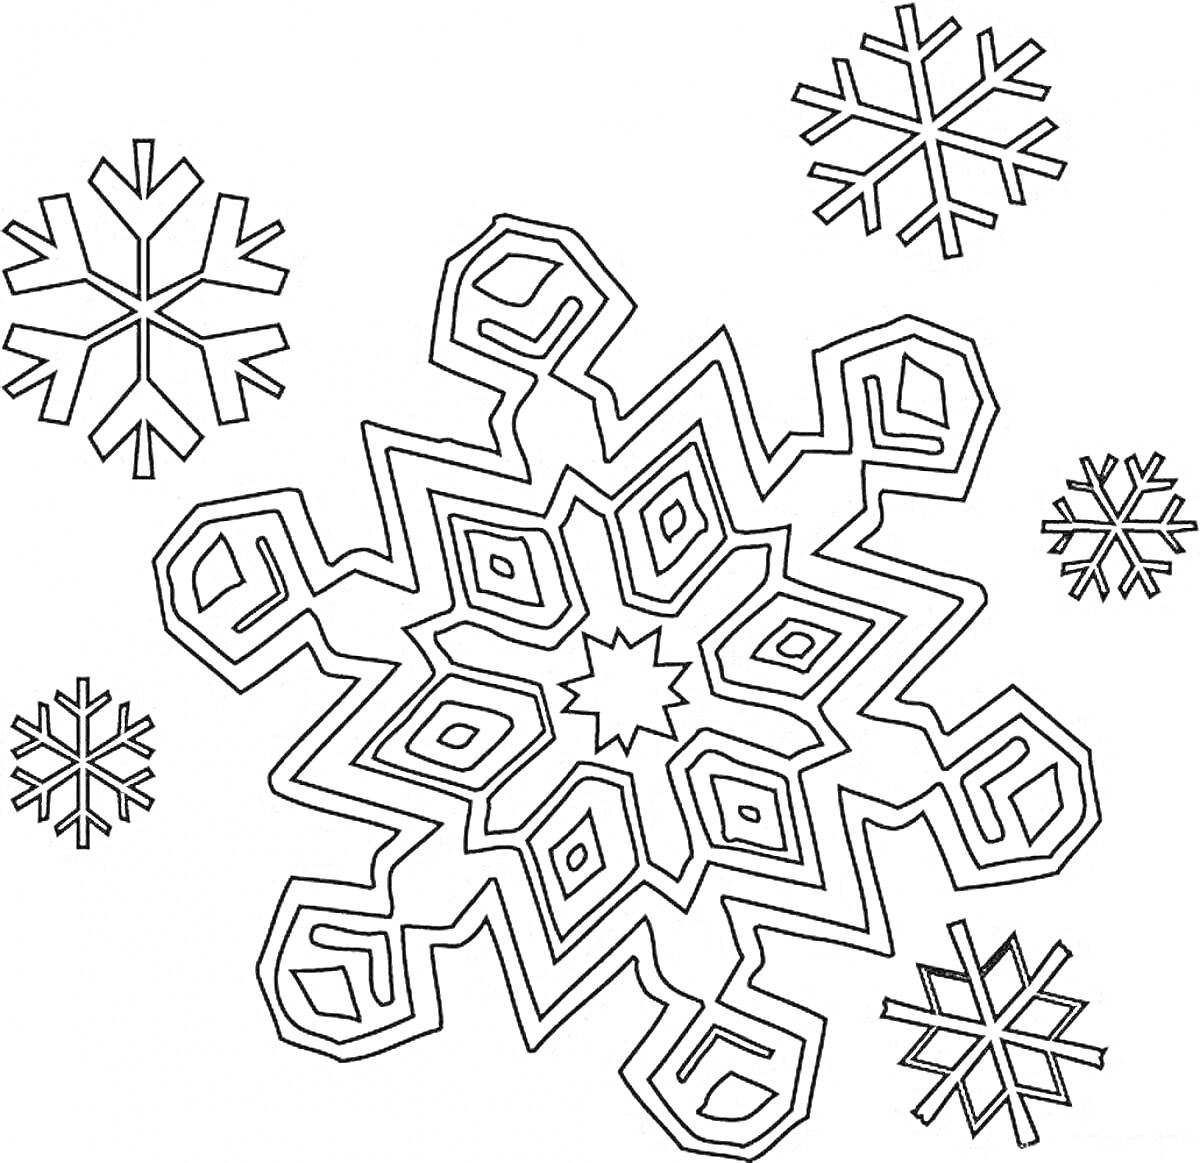 Раскраска большая геометрическая снежинка с четырьмя маленькими снежинками вокруг